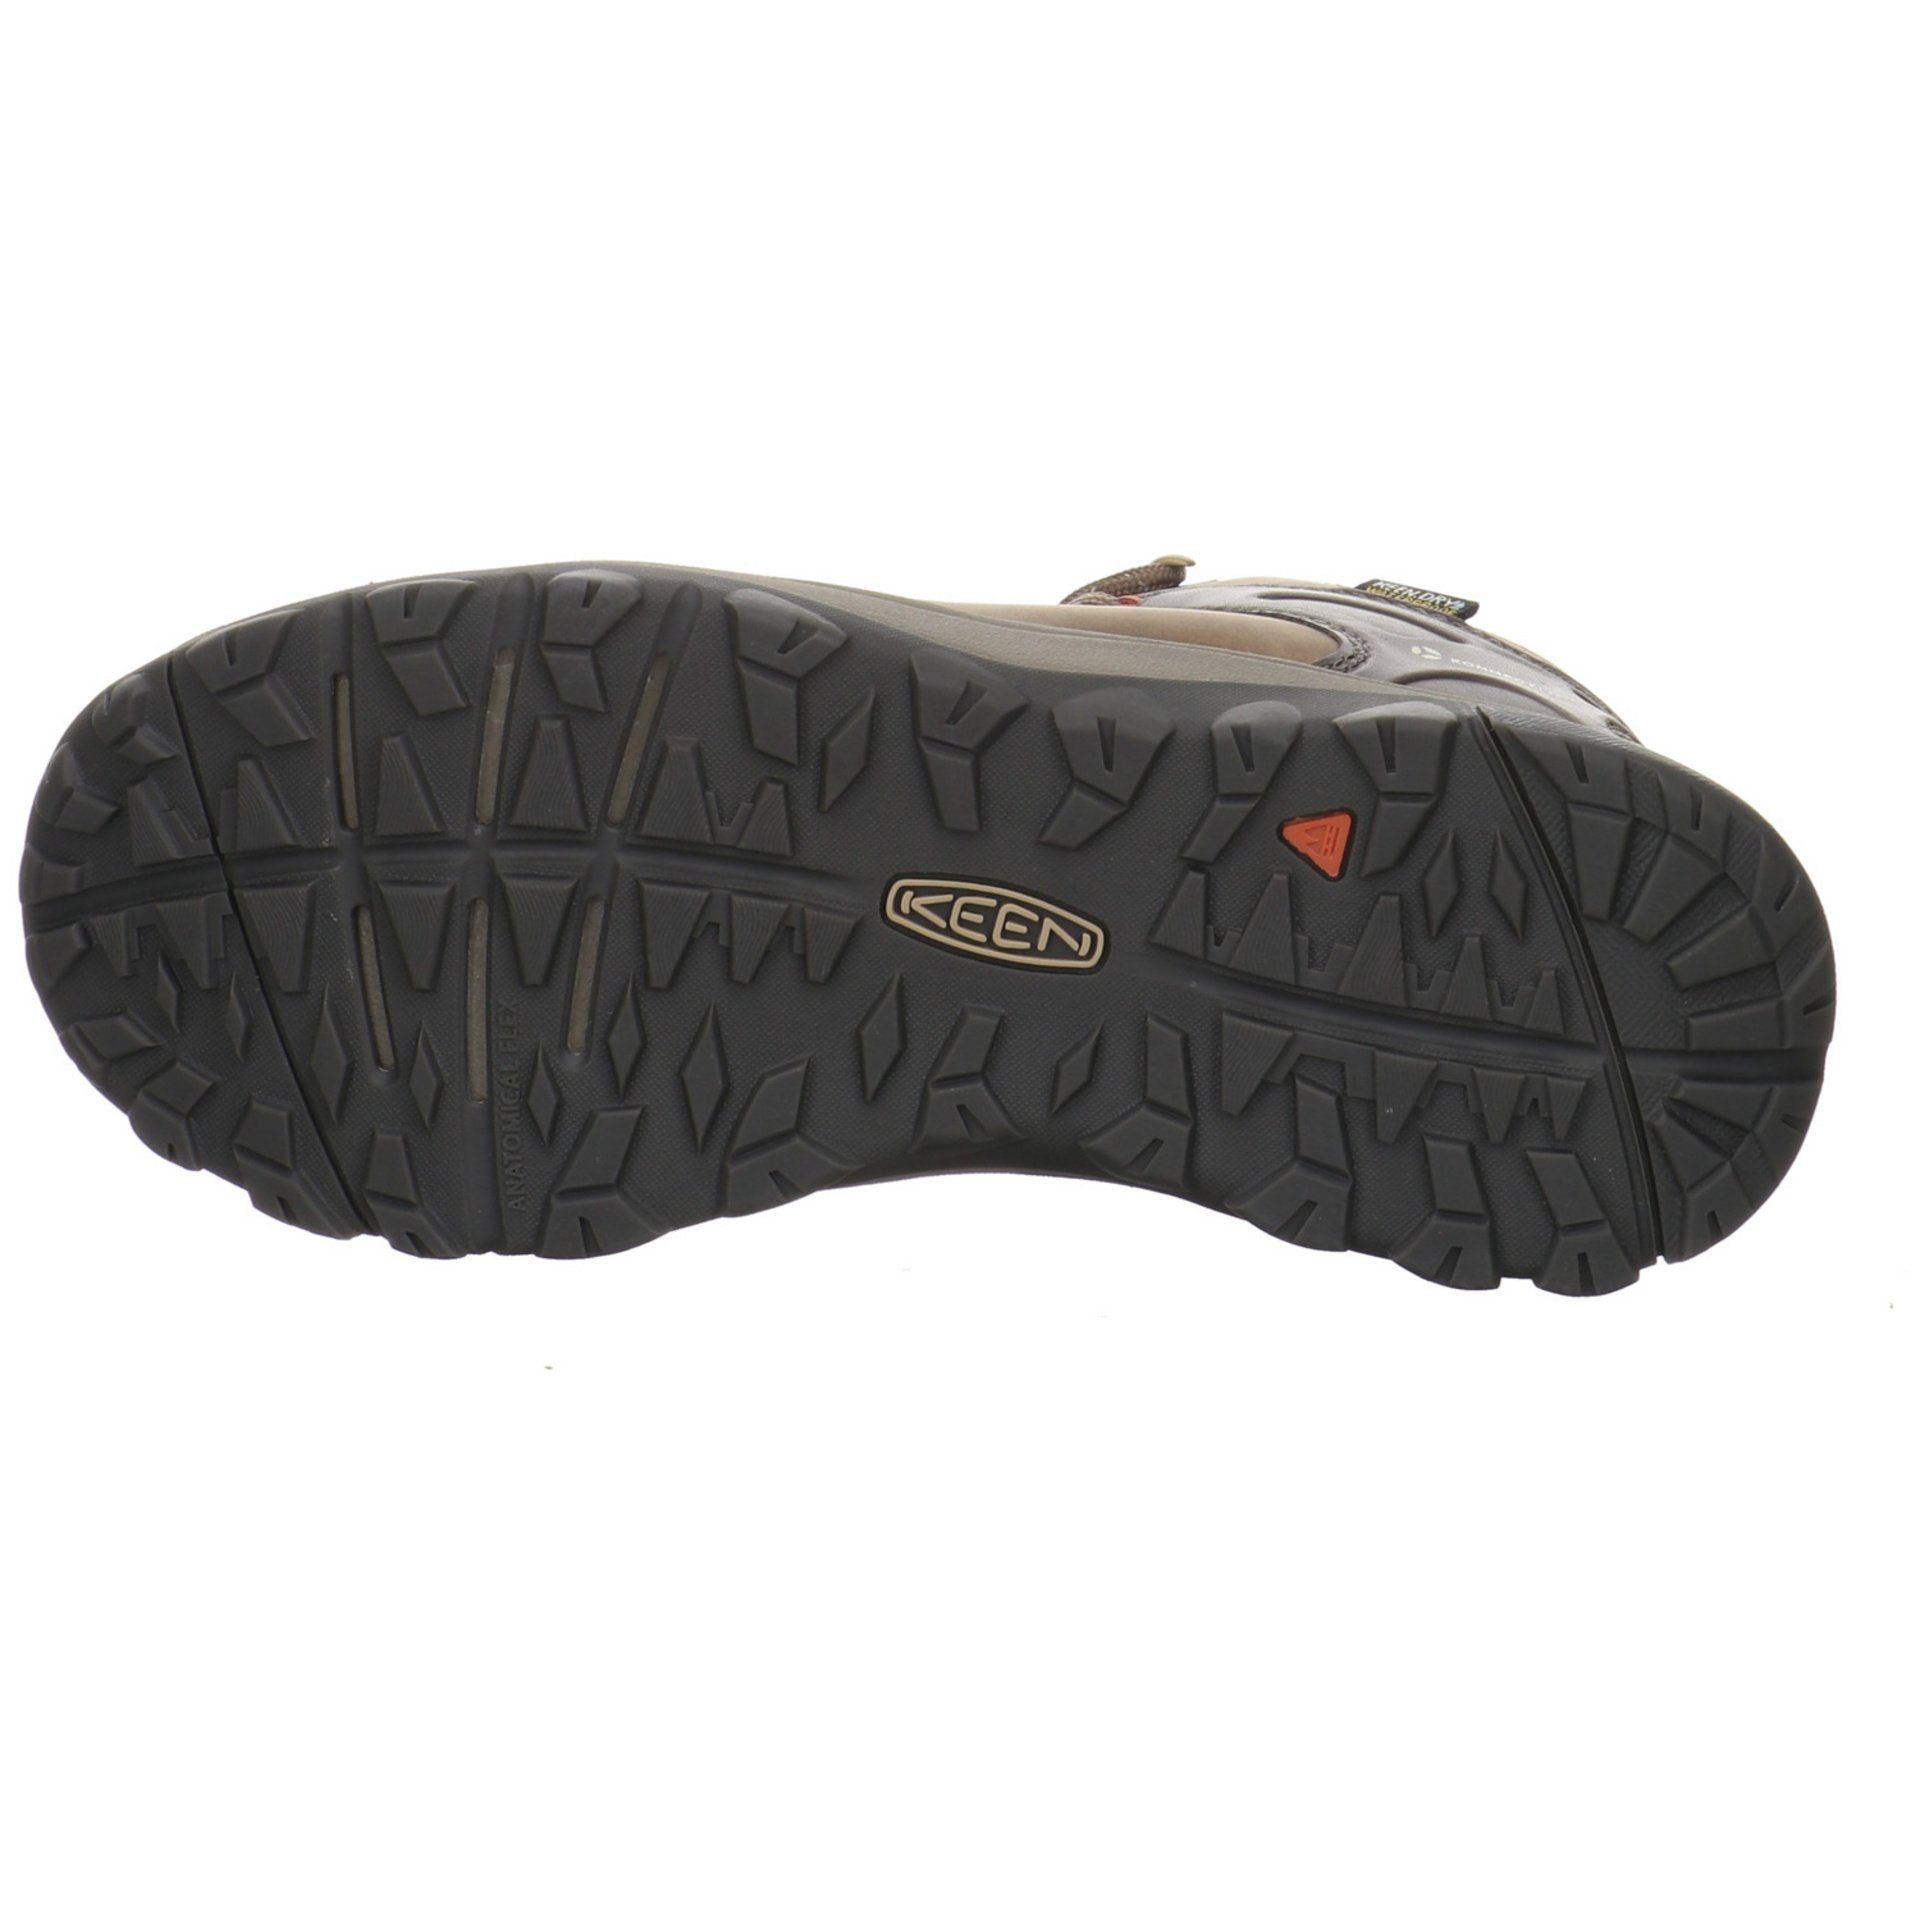 Schuhe Damen Leder-/Textilkombination Outdoor Terradora Outdoorschuh ll Brindle/Redwood Keen Outdoorschuh